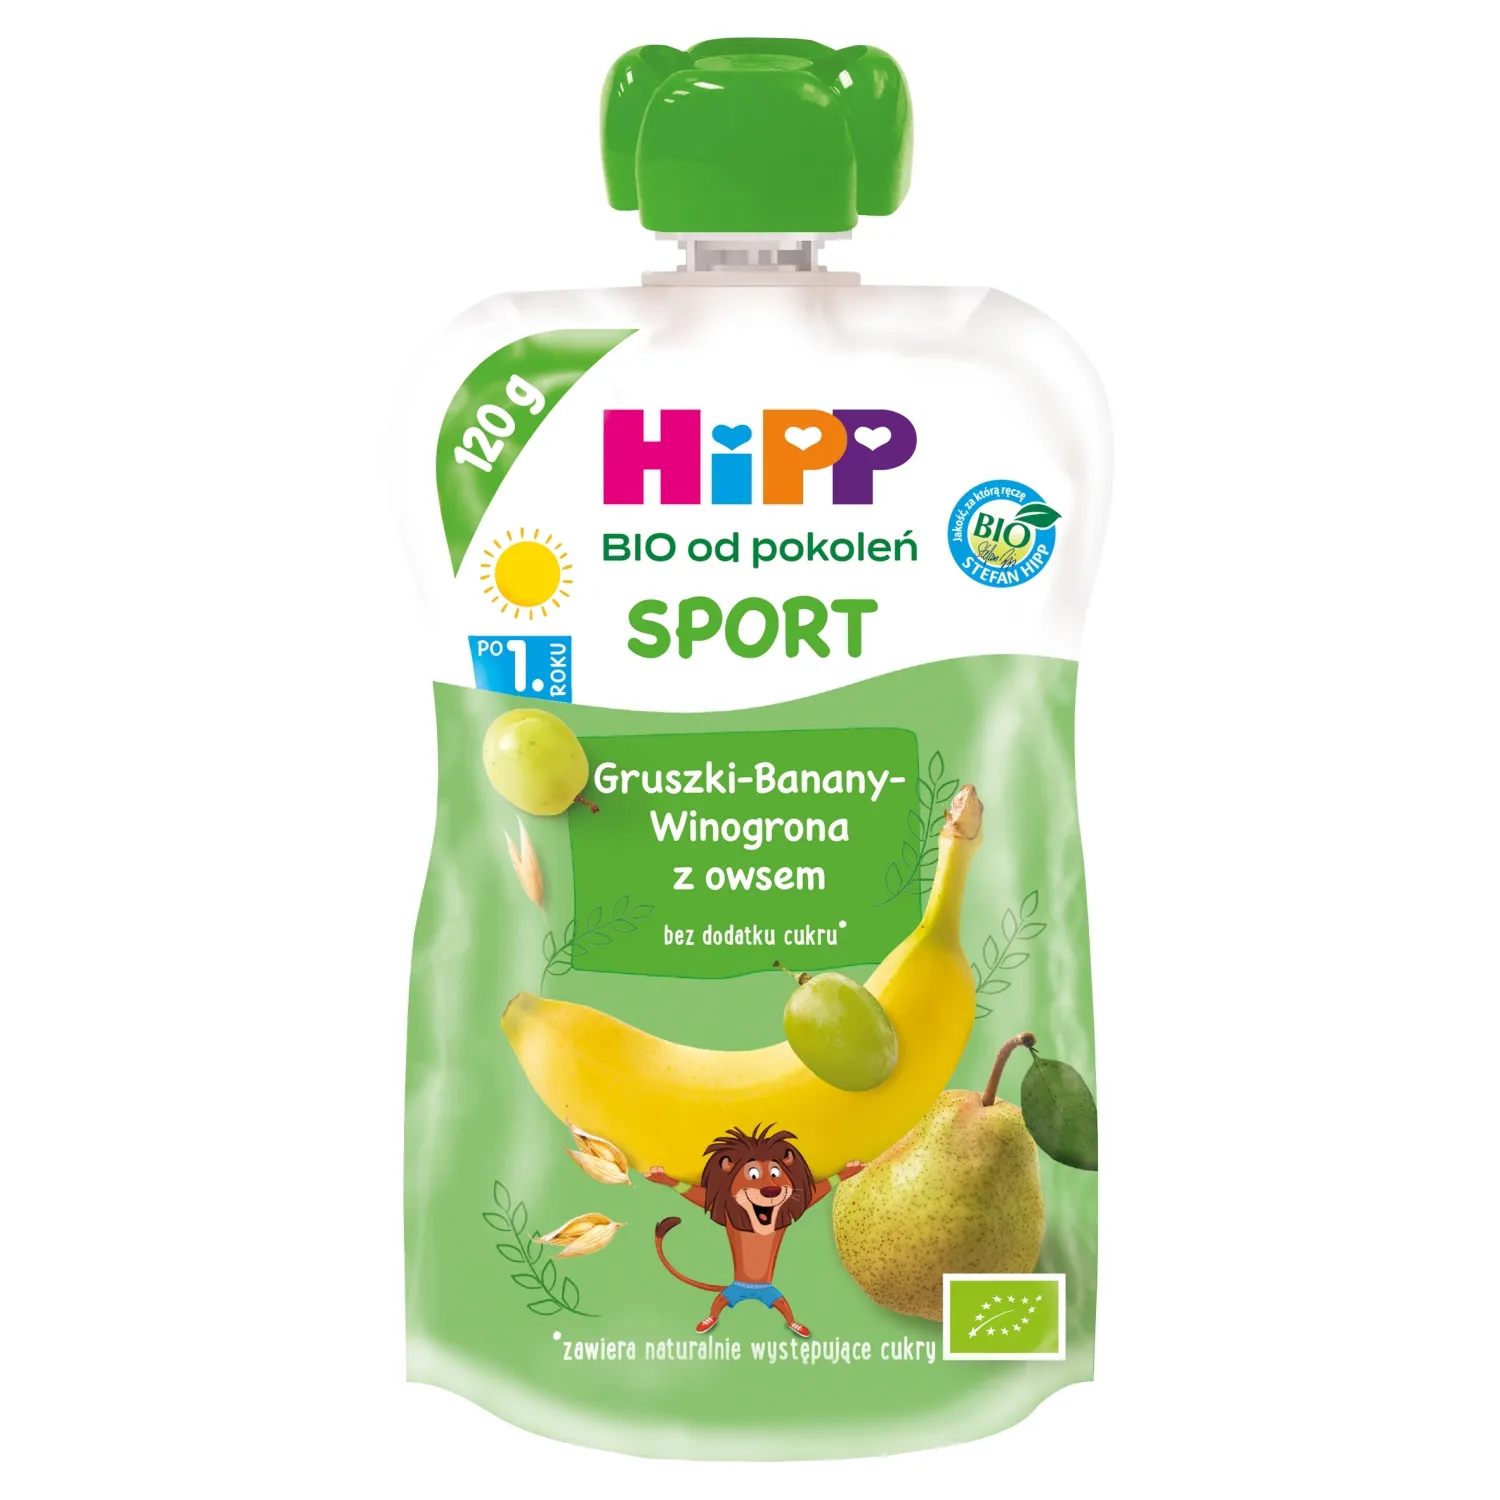 HiPP BIO od pokoleń SPORT Gruszki-banany-winogrona z owsem po 12. miesiącu, 120 g